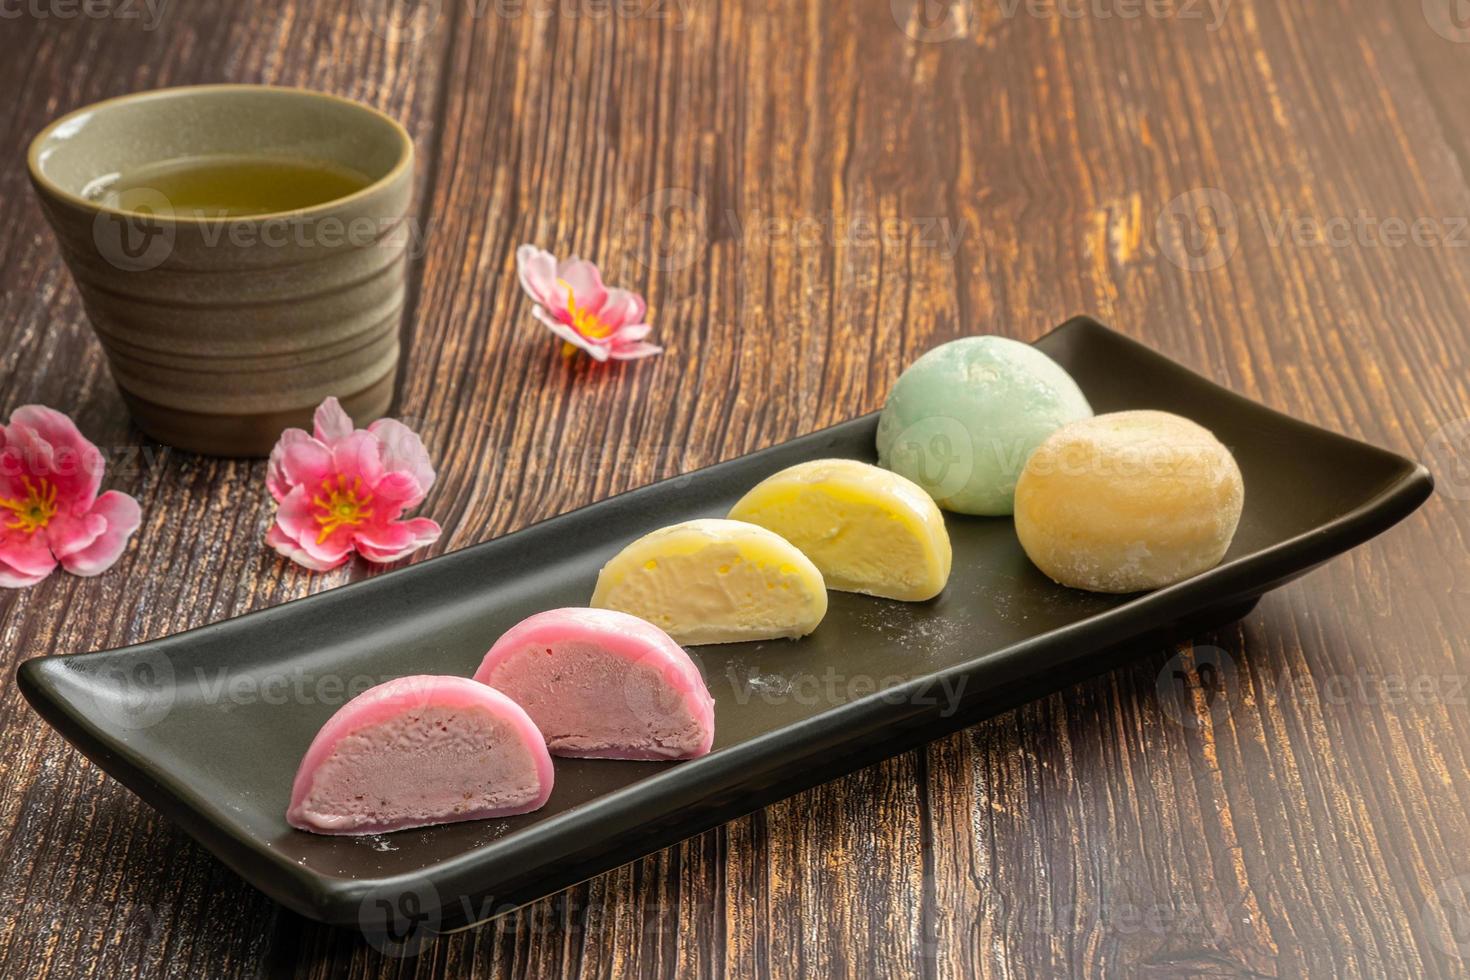 daifukumochi, ou daifuku, é uma confecção japonesa que consiste em um pequeno mochi redondo recheado com recheio doce, doces tradicionais japoneses. foto